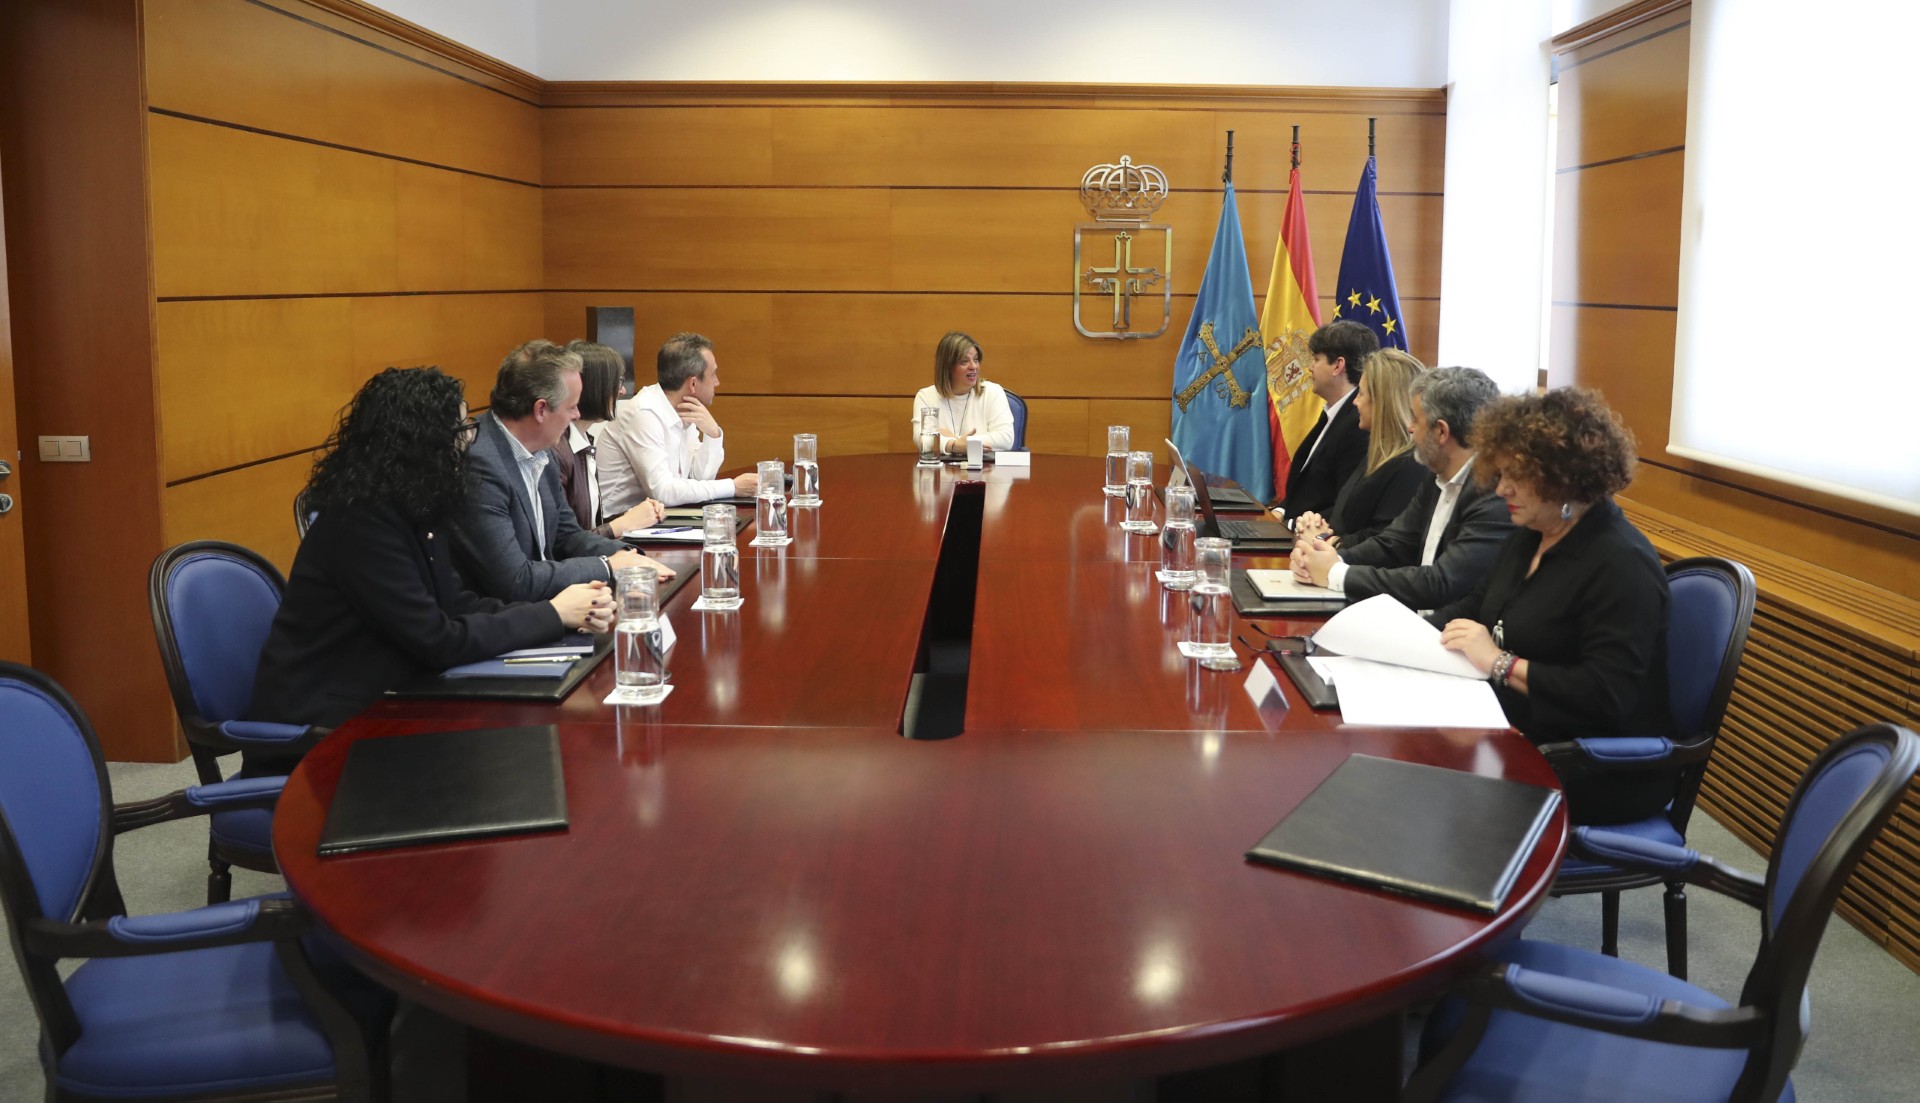 Image 1 of article El Gobierno de Asturias aprueba una partida de 5,9 millones para mejoras en la residencia Mixta de Gijón/Xixón, el mayor centro del ERA